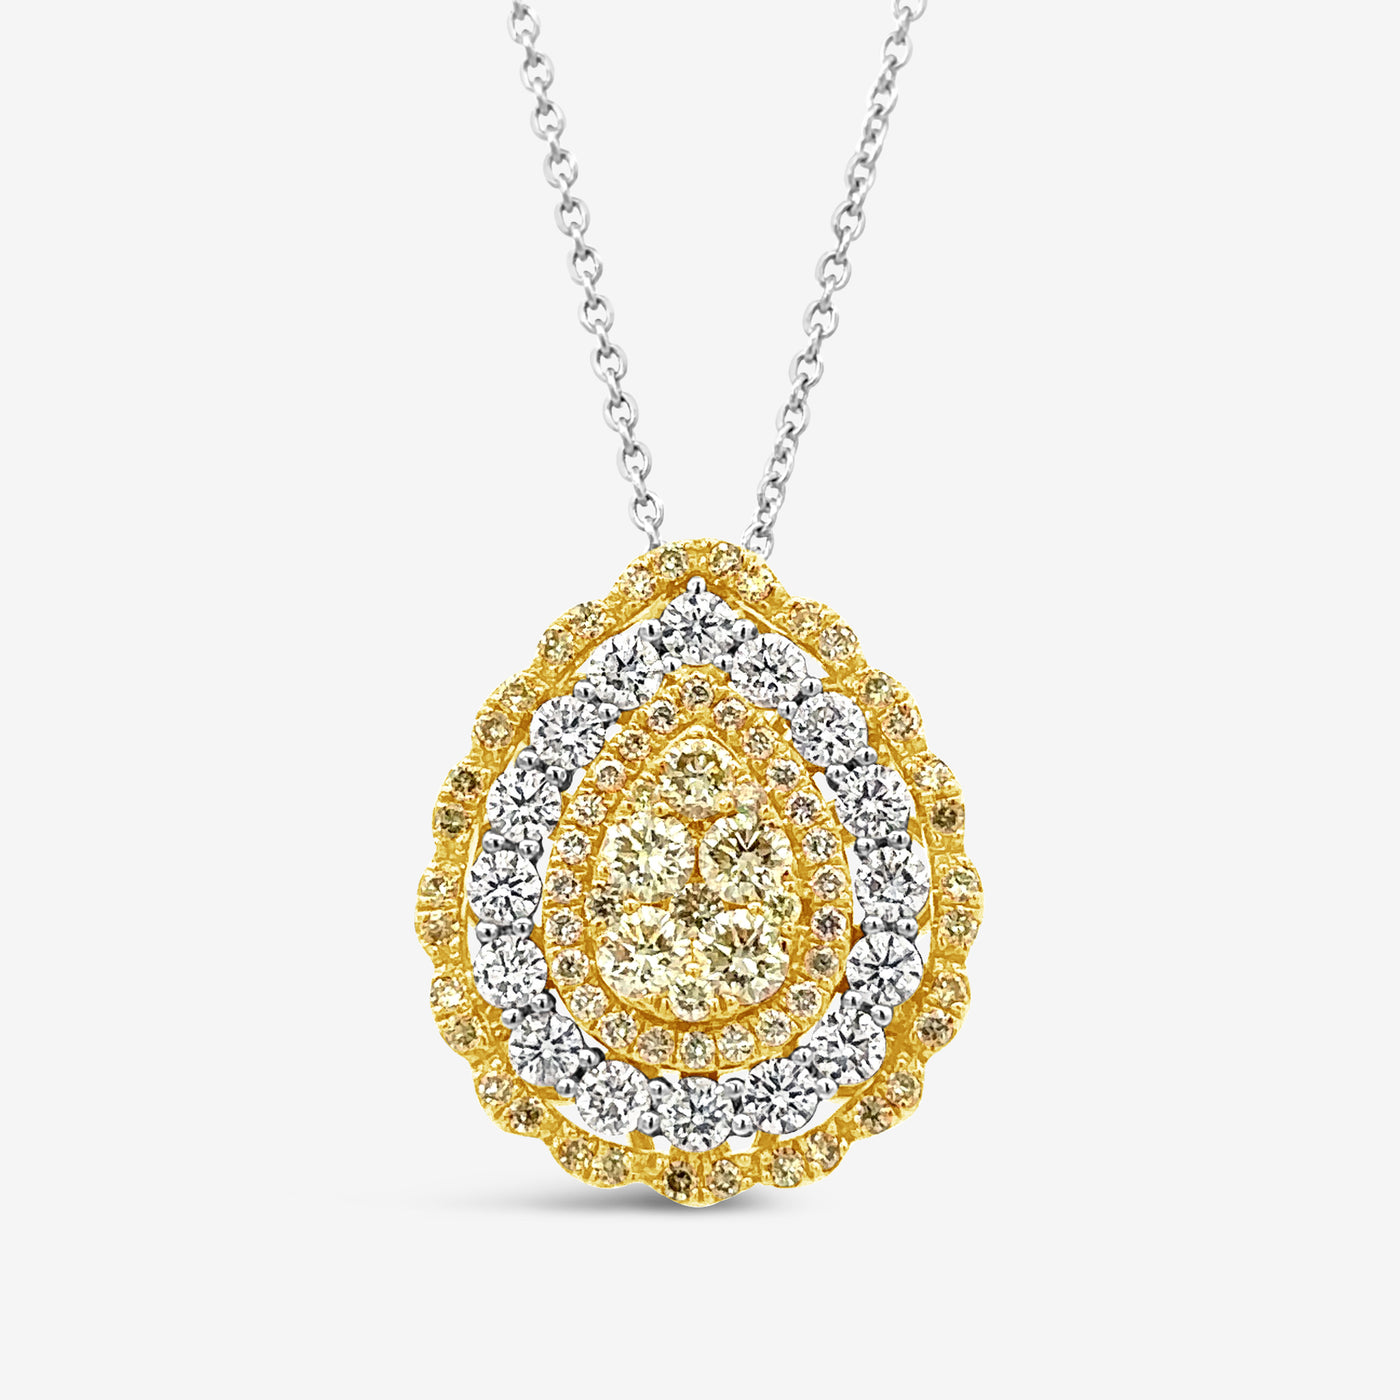 Triple Halo Diamond Pendant Necklace